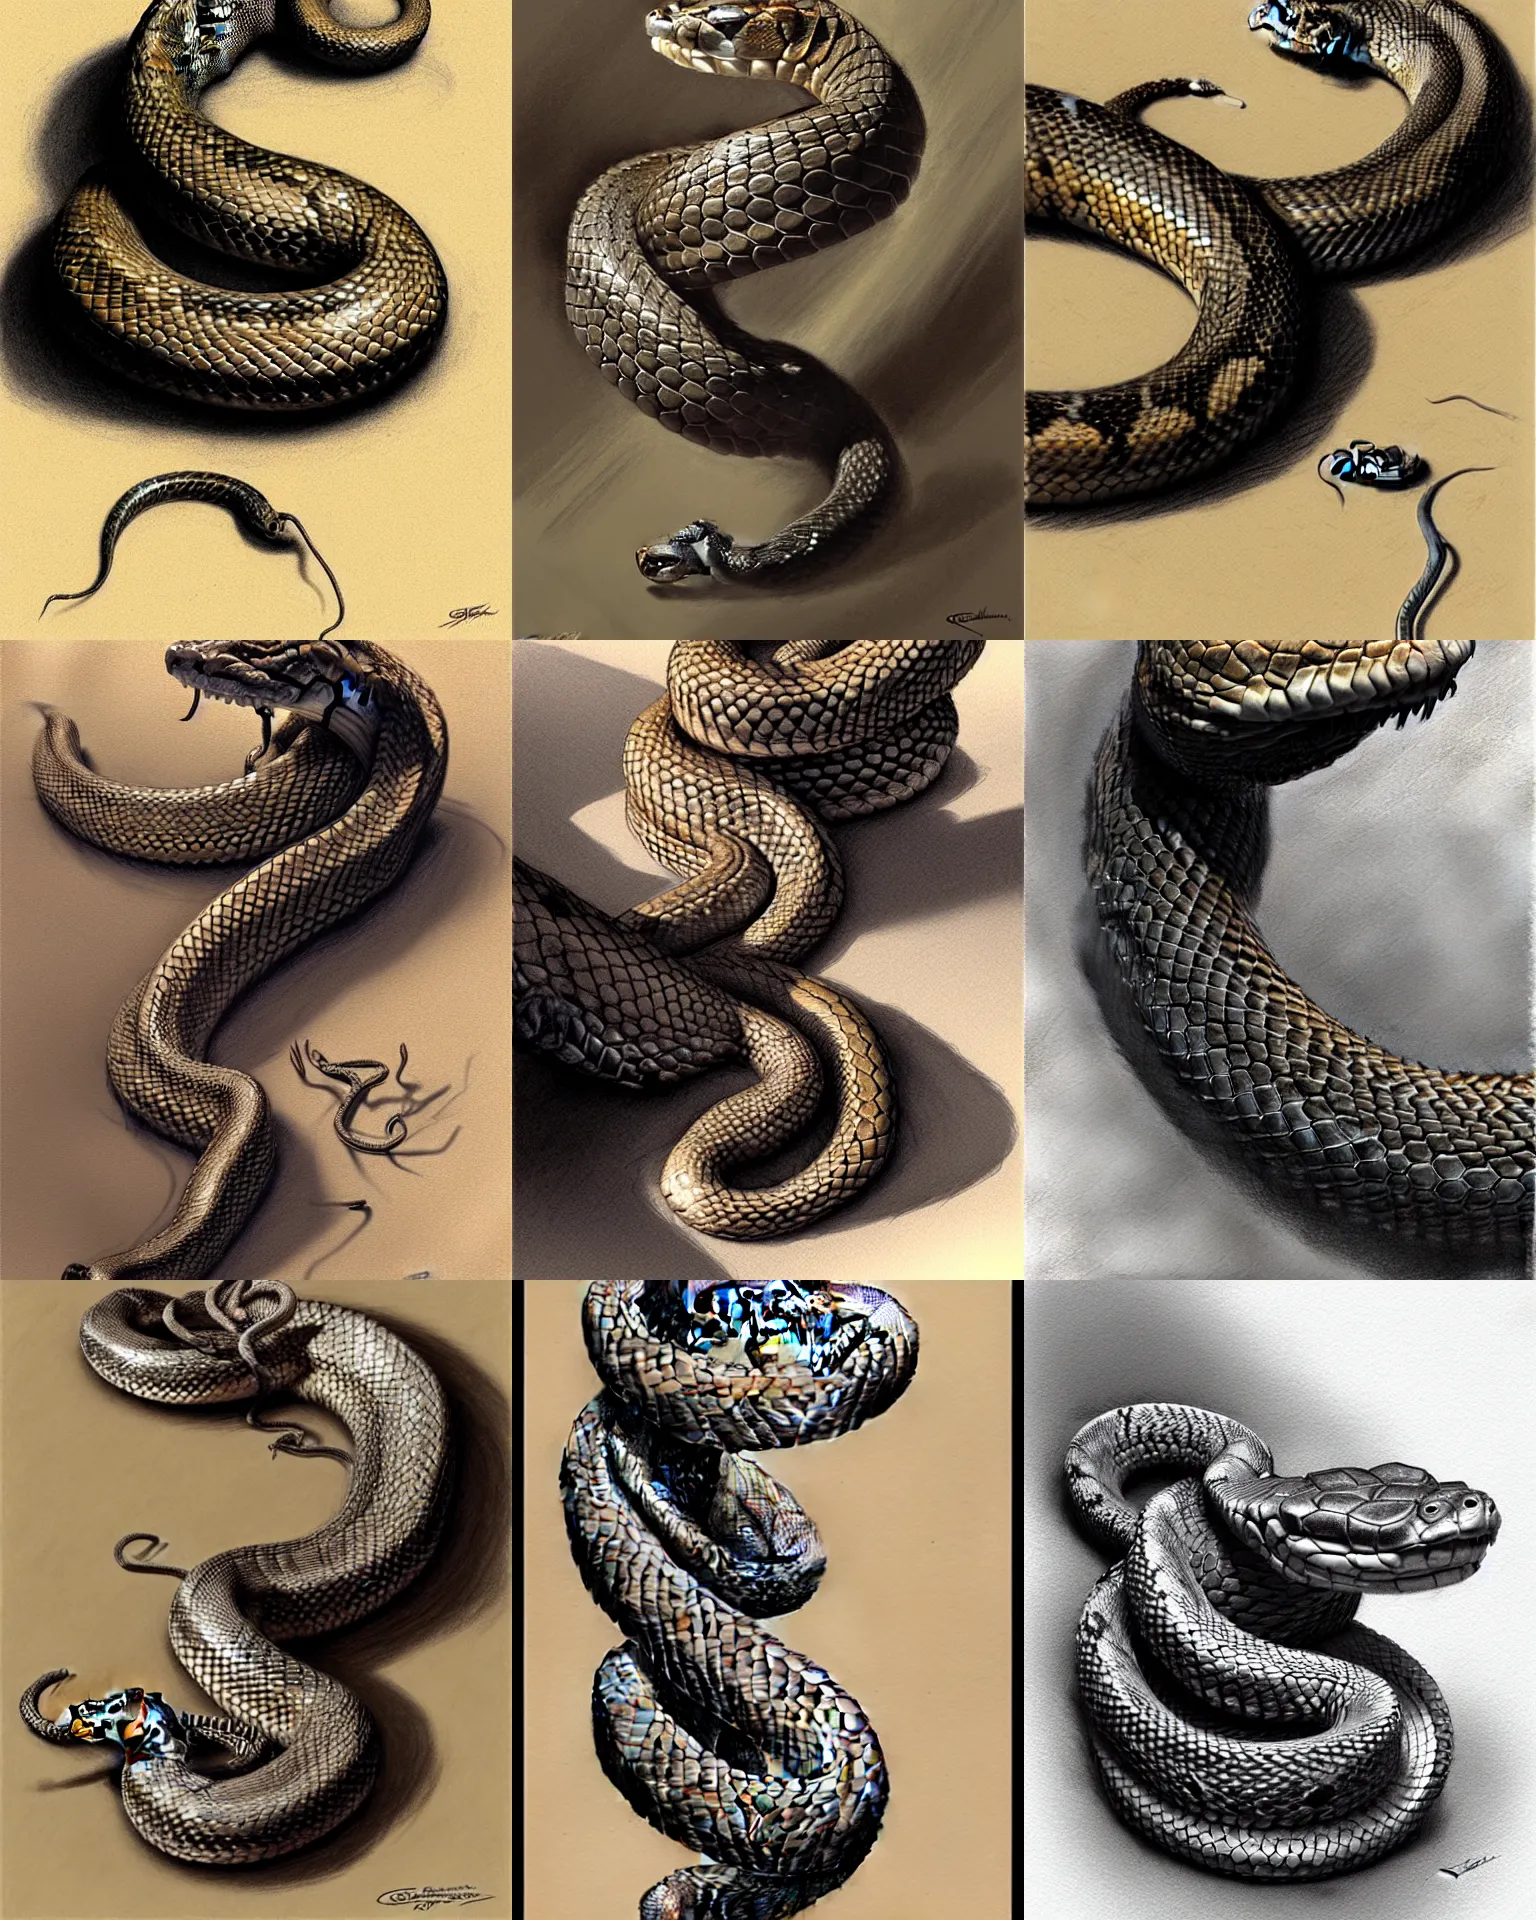 King cobra | Cobra reale, Disegno serpente, Disegni di tatuaggio